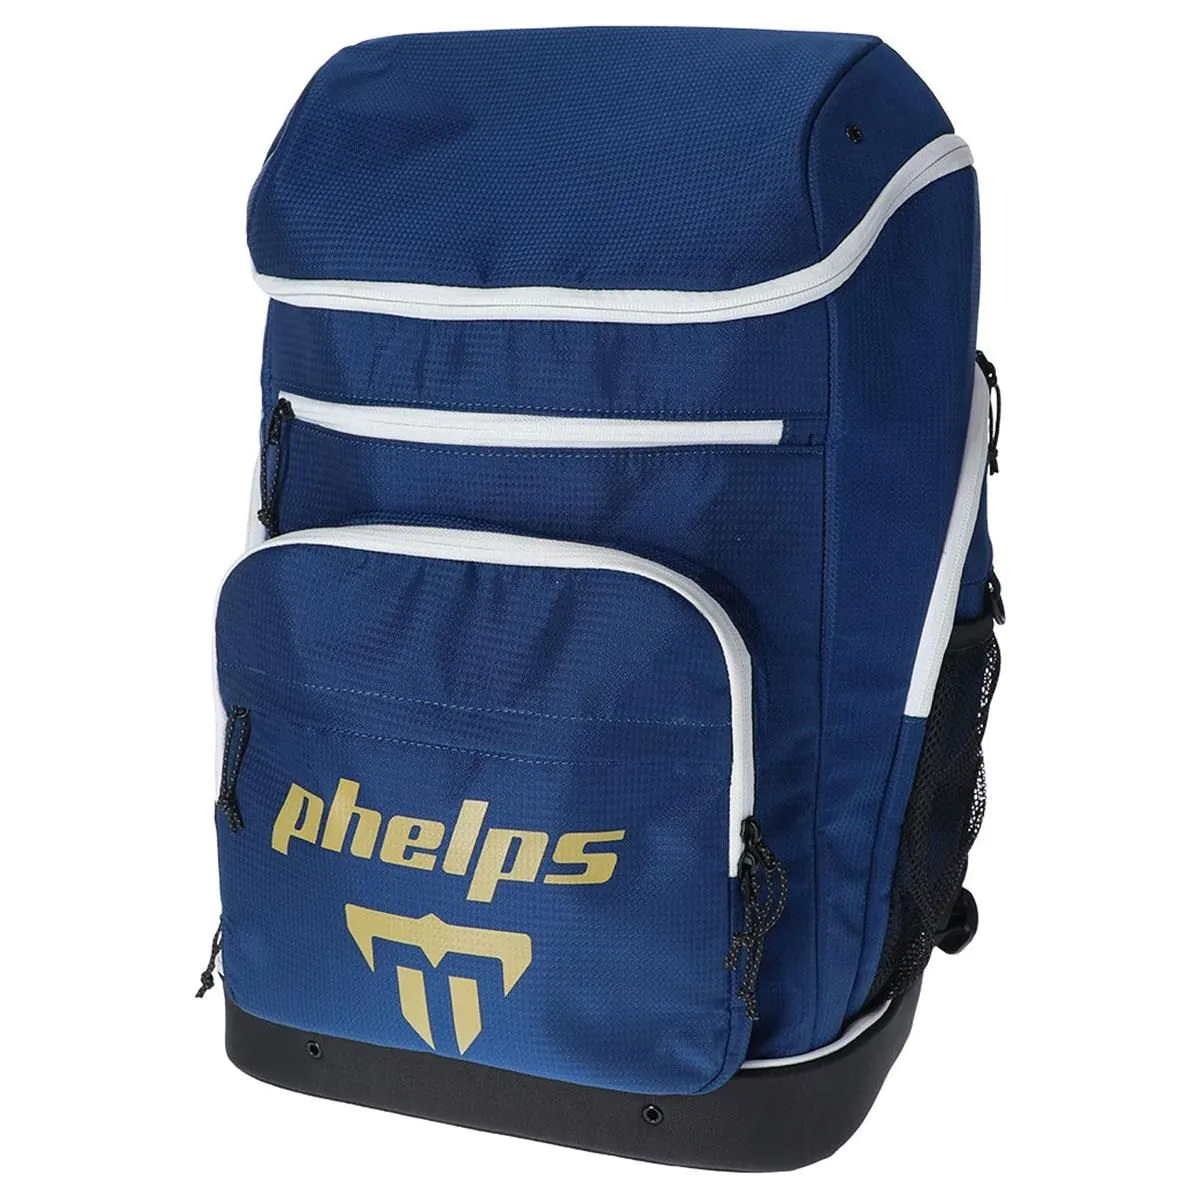 A Mochila Phelps Elite é uma grande mochila de natação leve projetada para transportar todo o teu equipamento de natação e roupas de e para a piscina. Esta mochila da Phelps é embalada com recursos incluíndo vários bolsos e grandes compartimentos abertos.